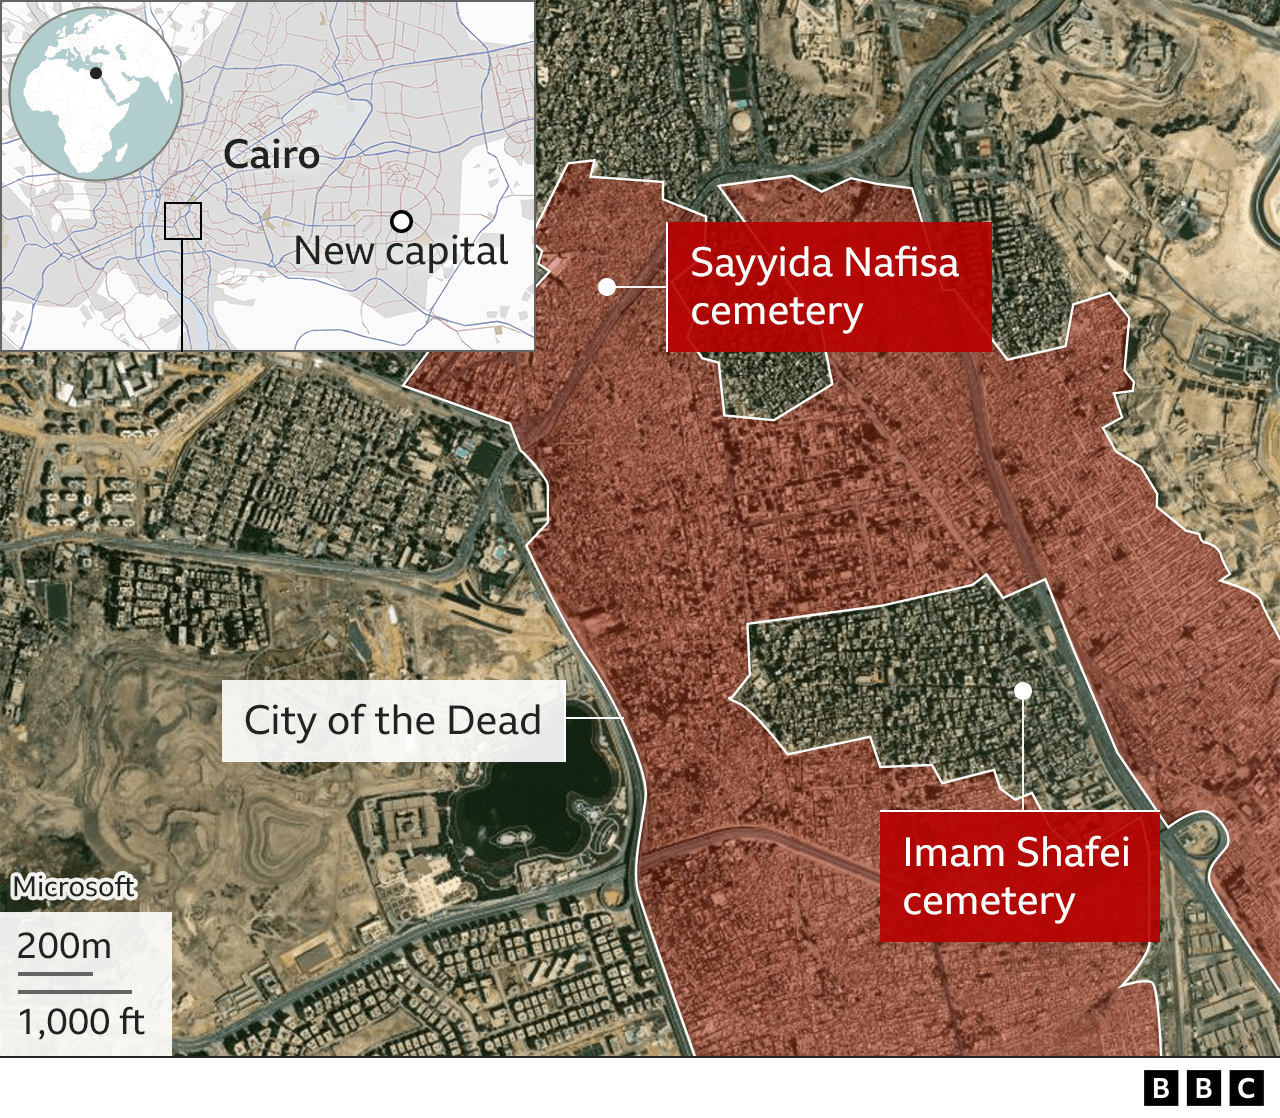 Χάρτης που δείχνει μέρος της Πόλης των Νεκρών του Καΐρου και τις τοποθεσίες των νεκροταφείων Sayyida Nafisa και Imam Shafei και πού βρίσκονται σε σχέση με τη νέα πρωτεύουσα